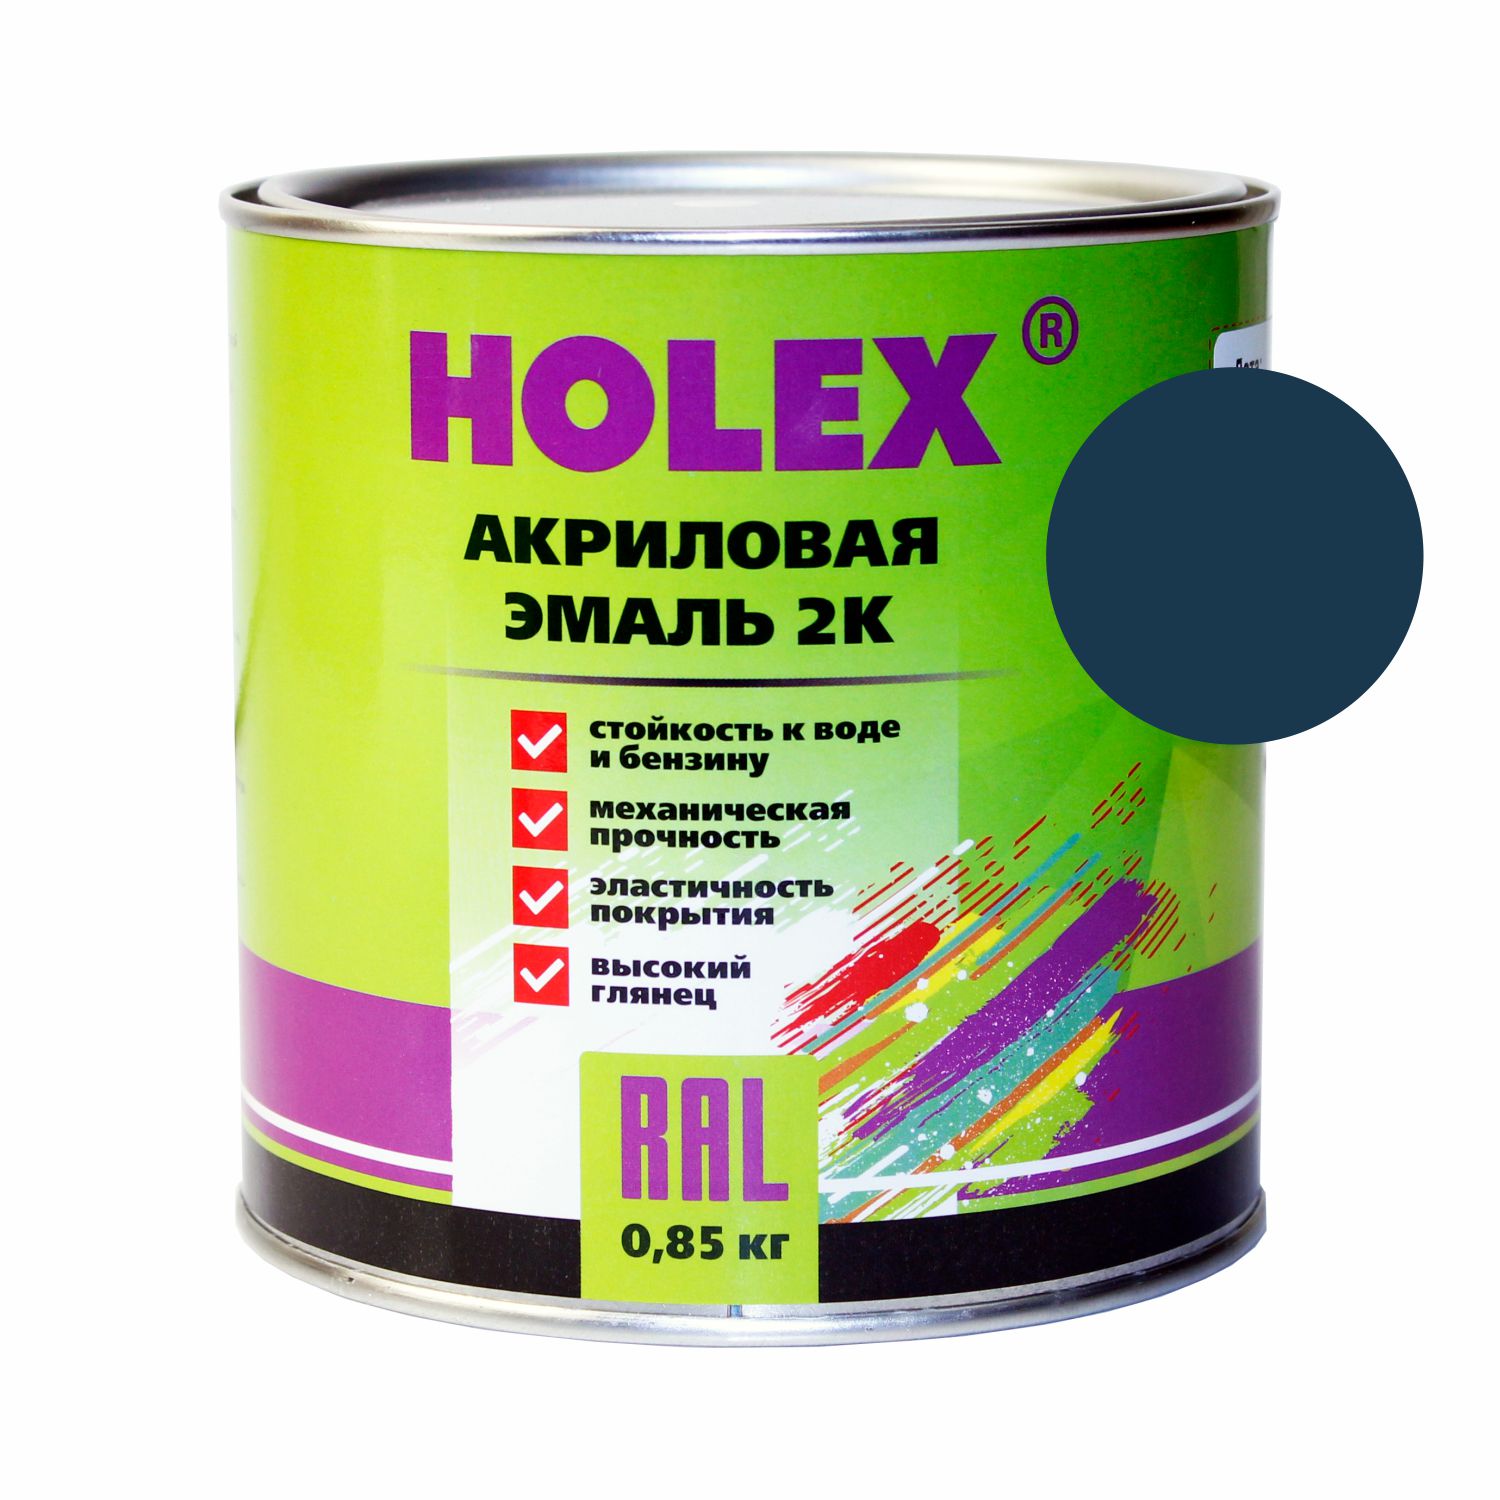 Автоэмаль Holex 420 Балтика 0,85 Кг Акриловая 2к Holex арт. HAS-59205